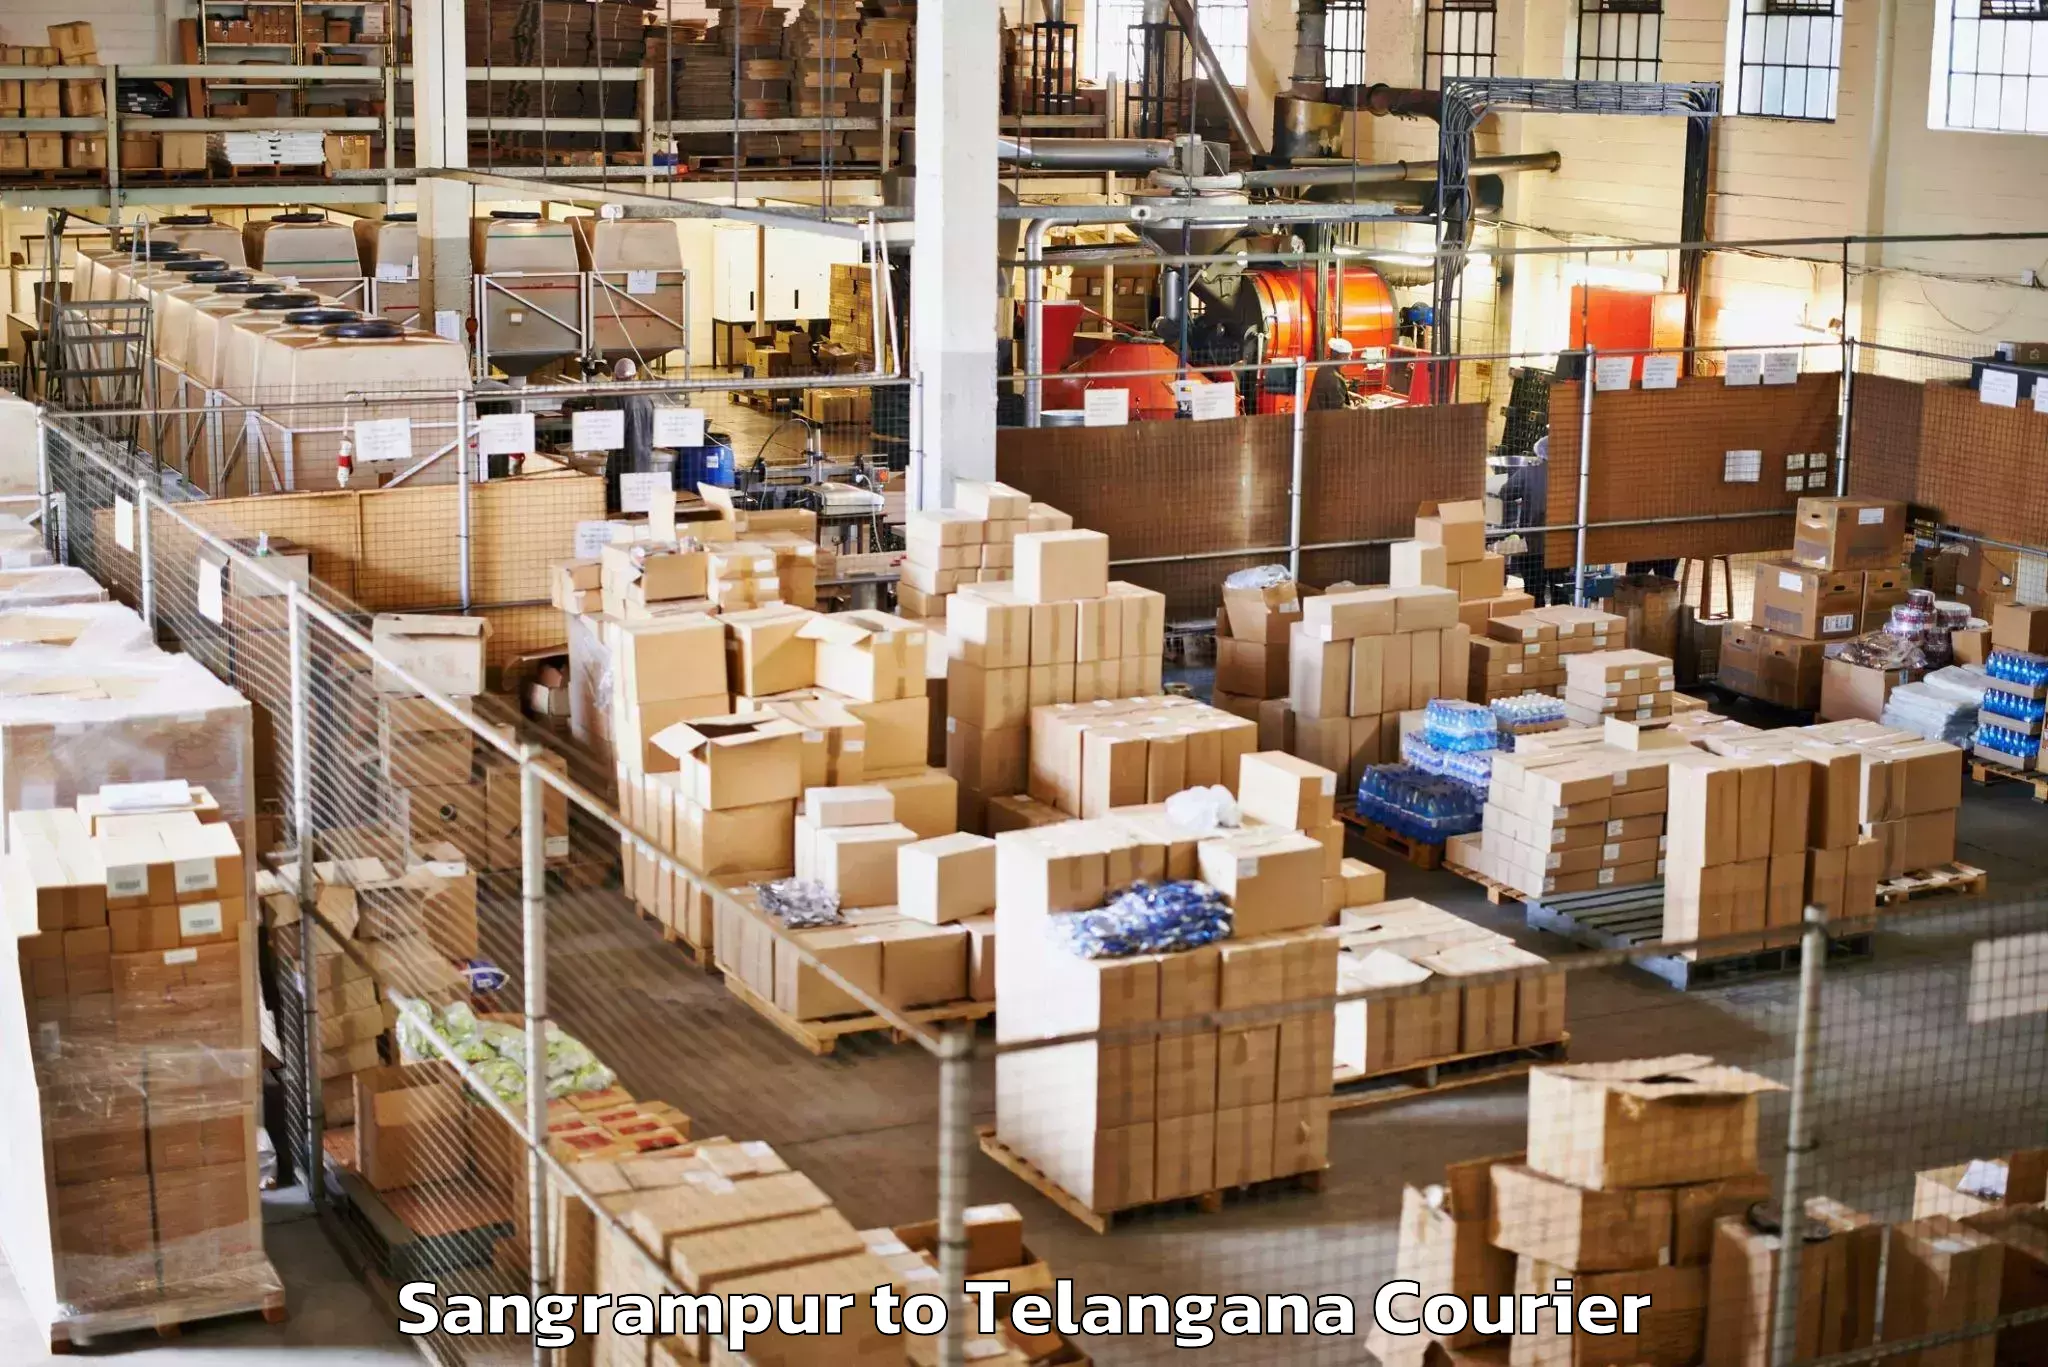 Baggage transport coordination Sangrampur to Gudur Warangal